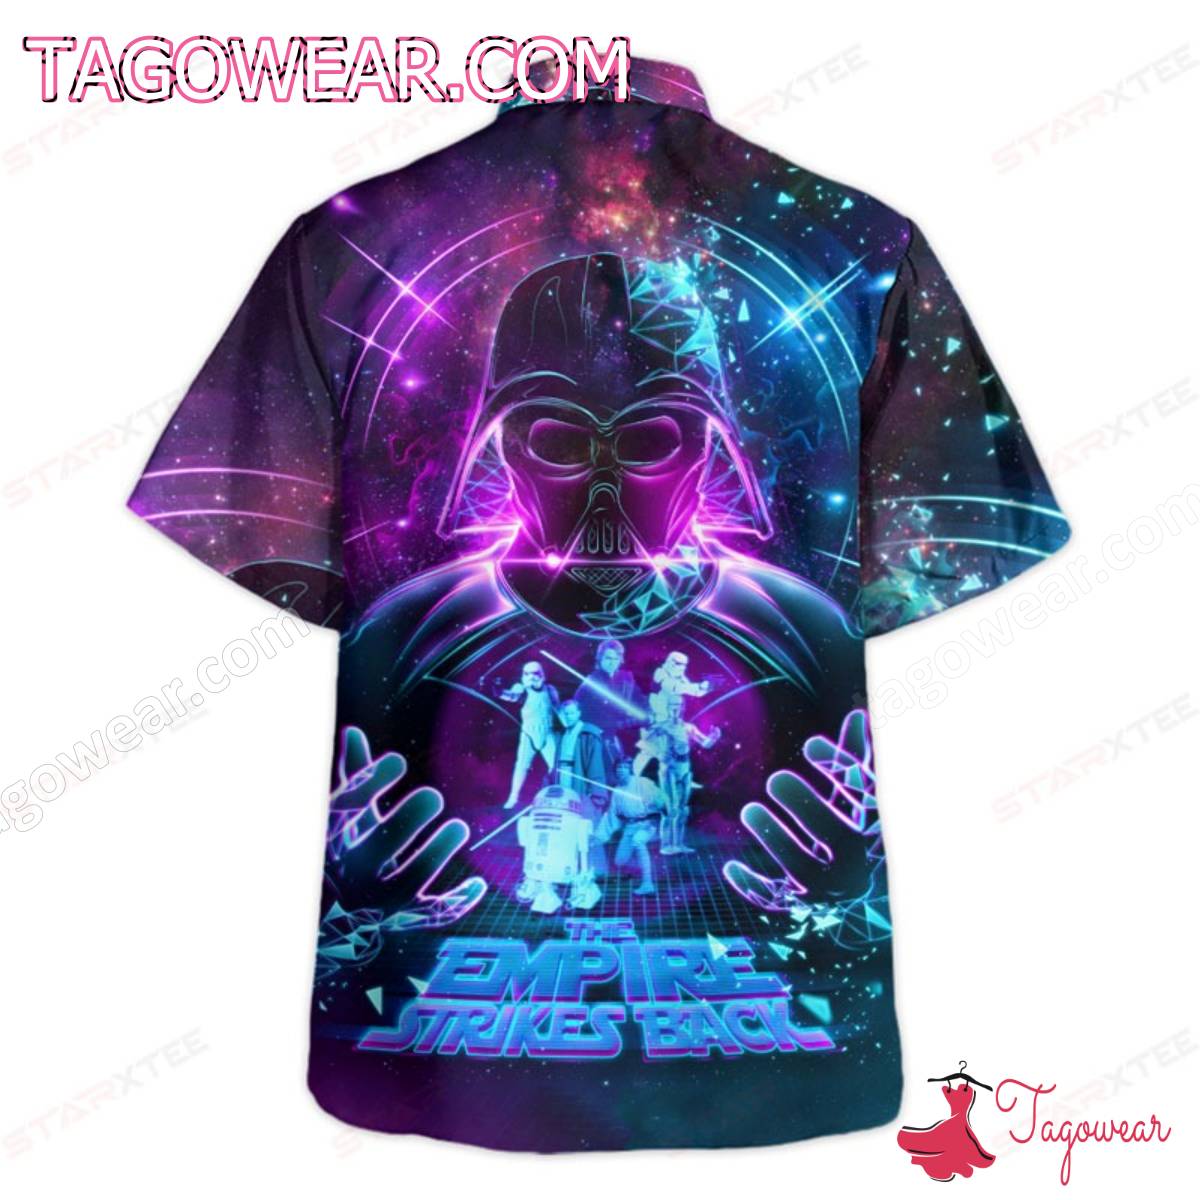 Star Wars Darth Vader The Empire Strikes Back Galaxy Hawaiian Shirt a